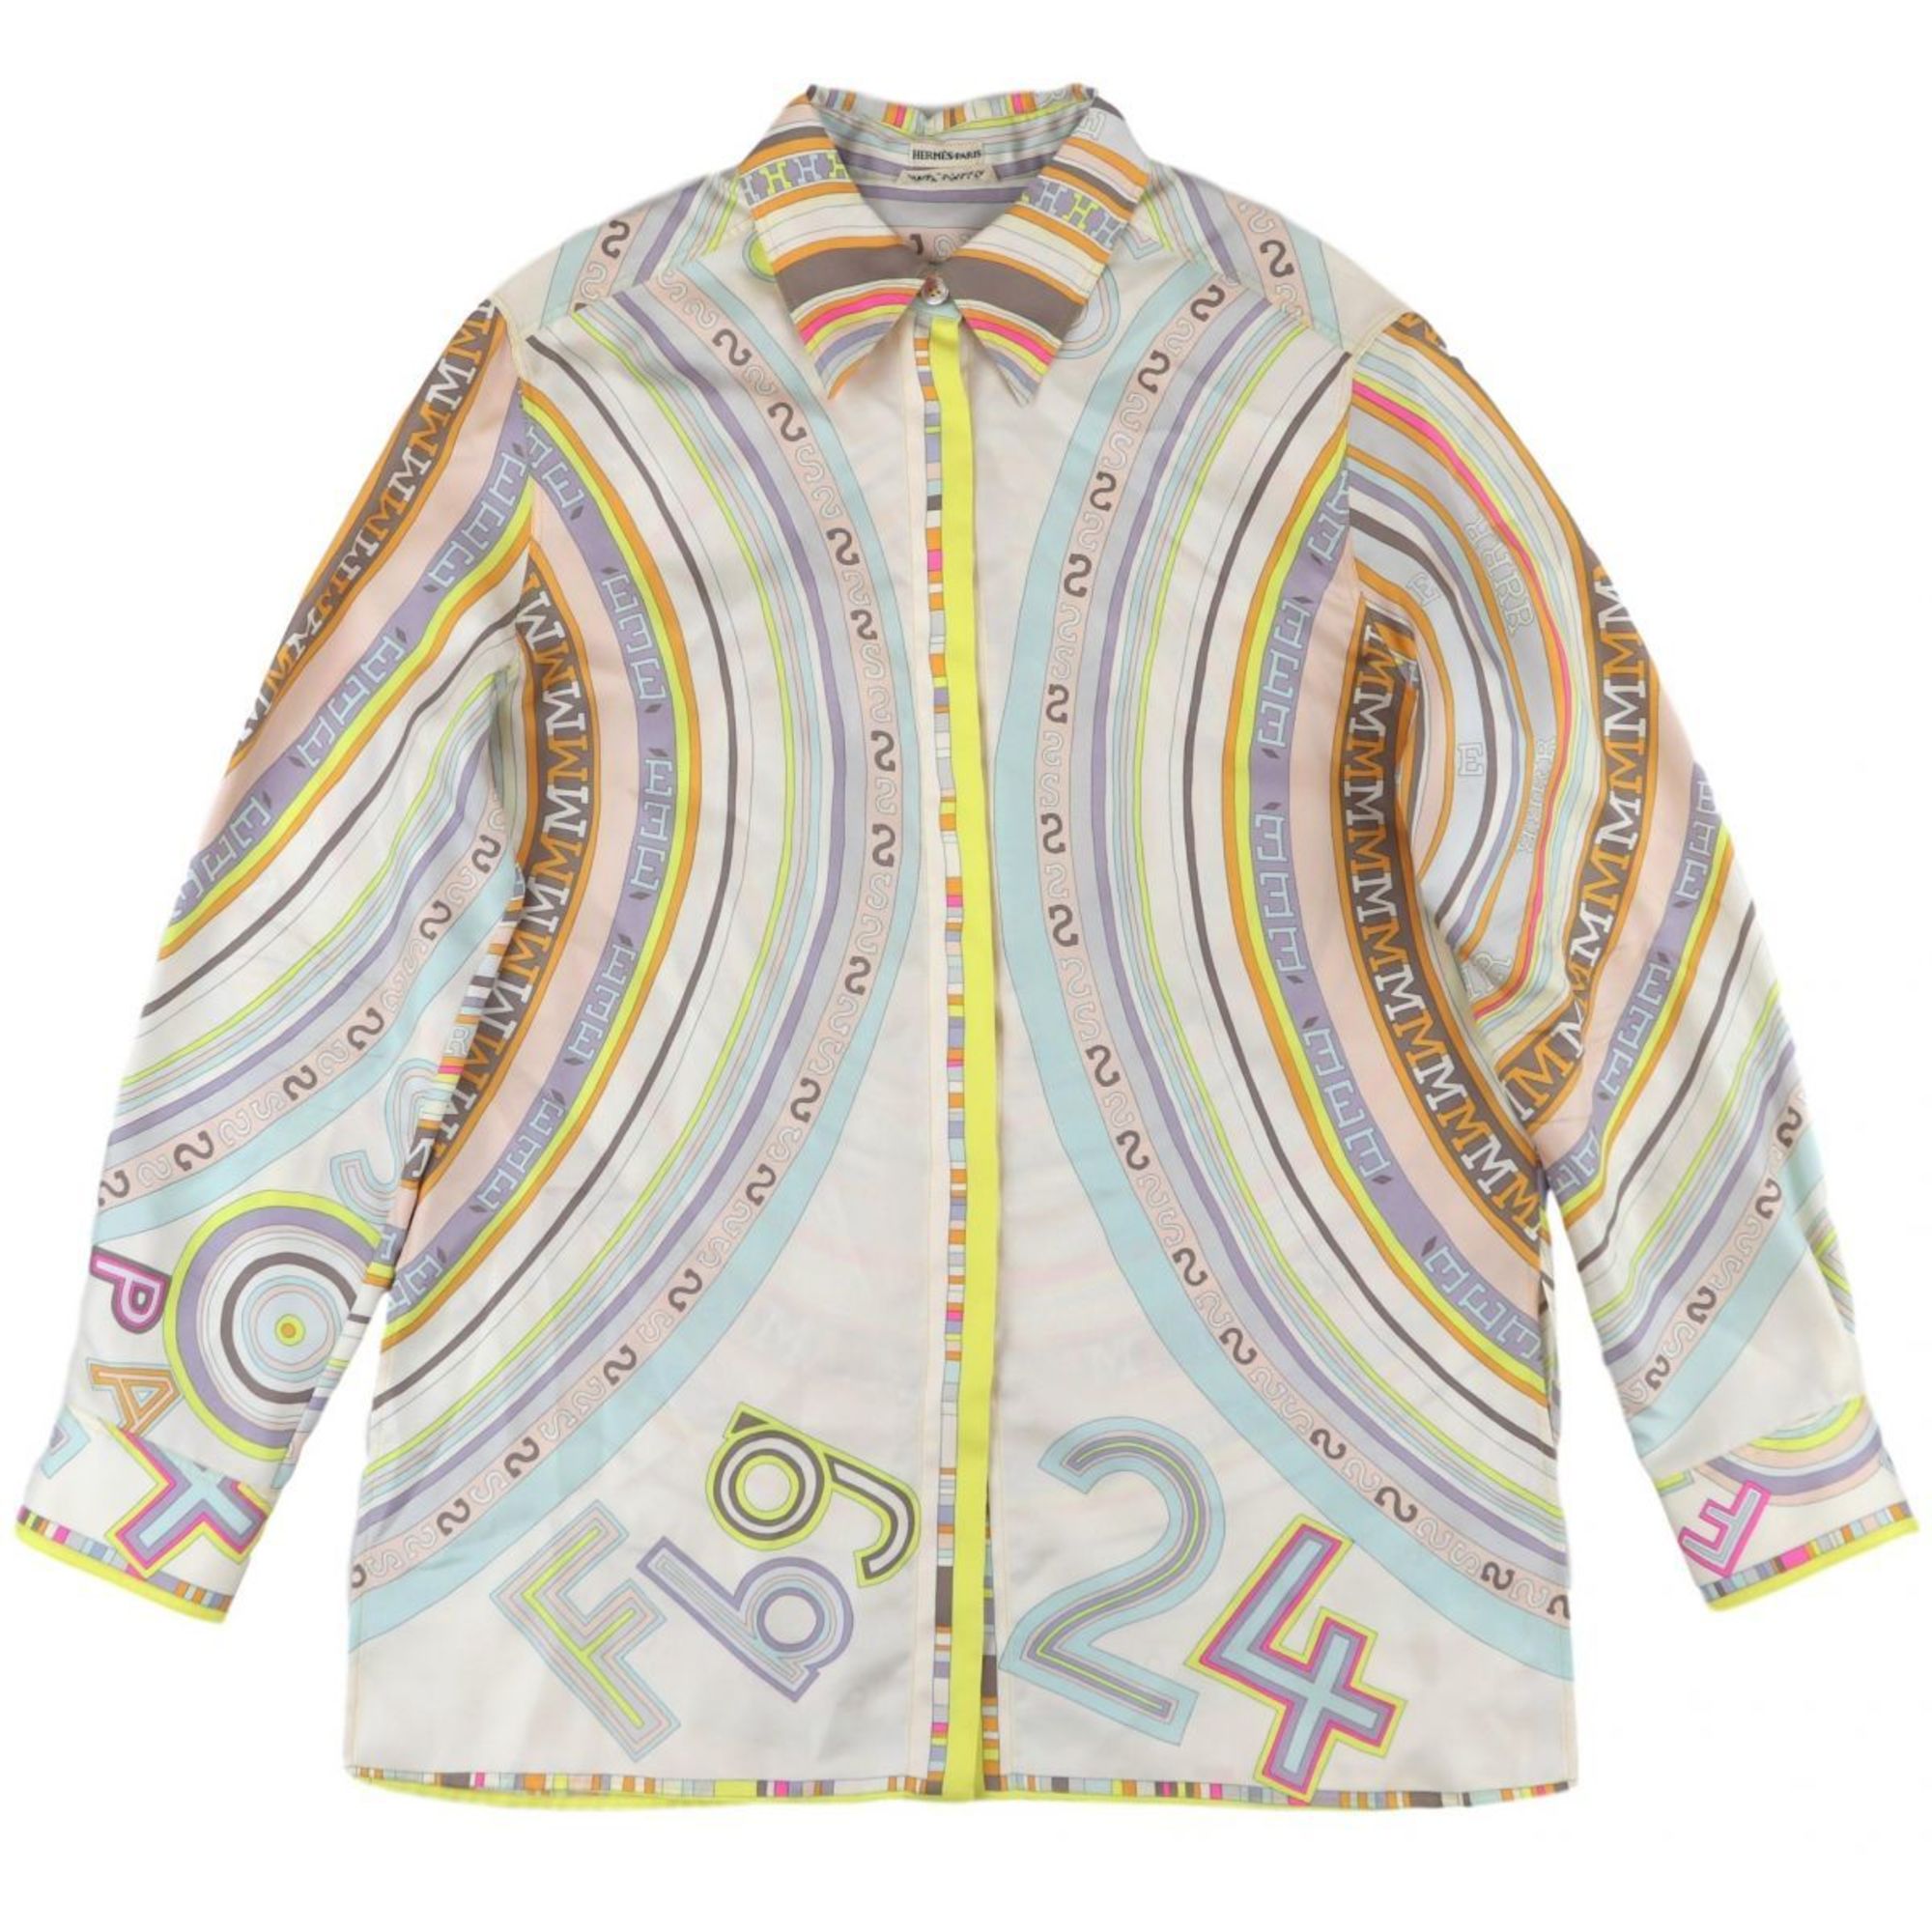 Hermes Margiela period total pattern silk blouse ladies multi 36 long sleeve shirt